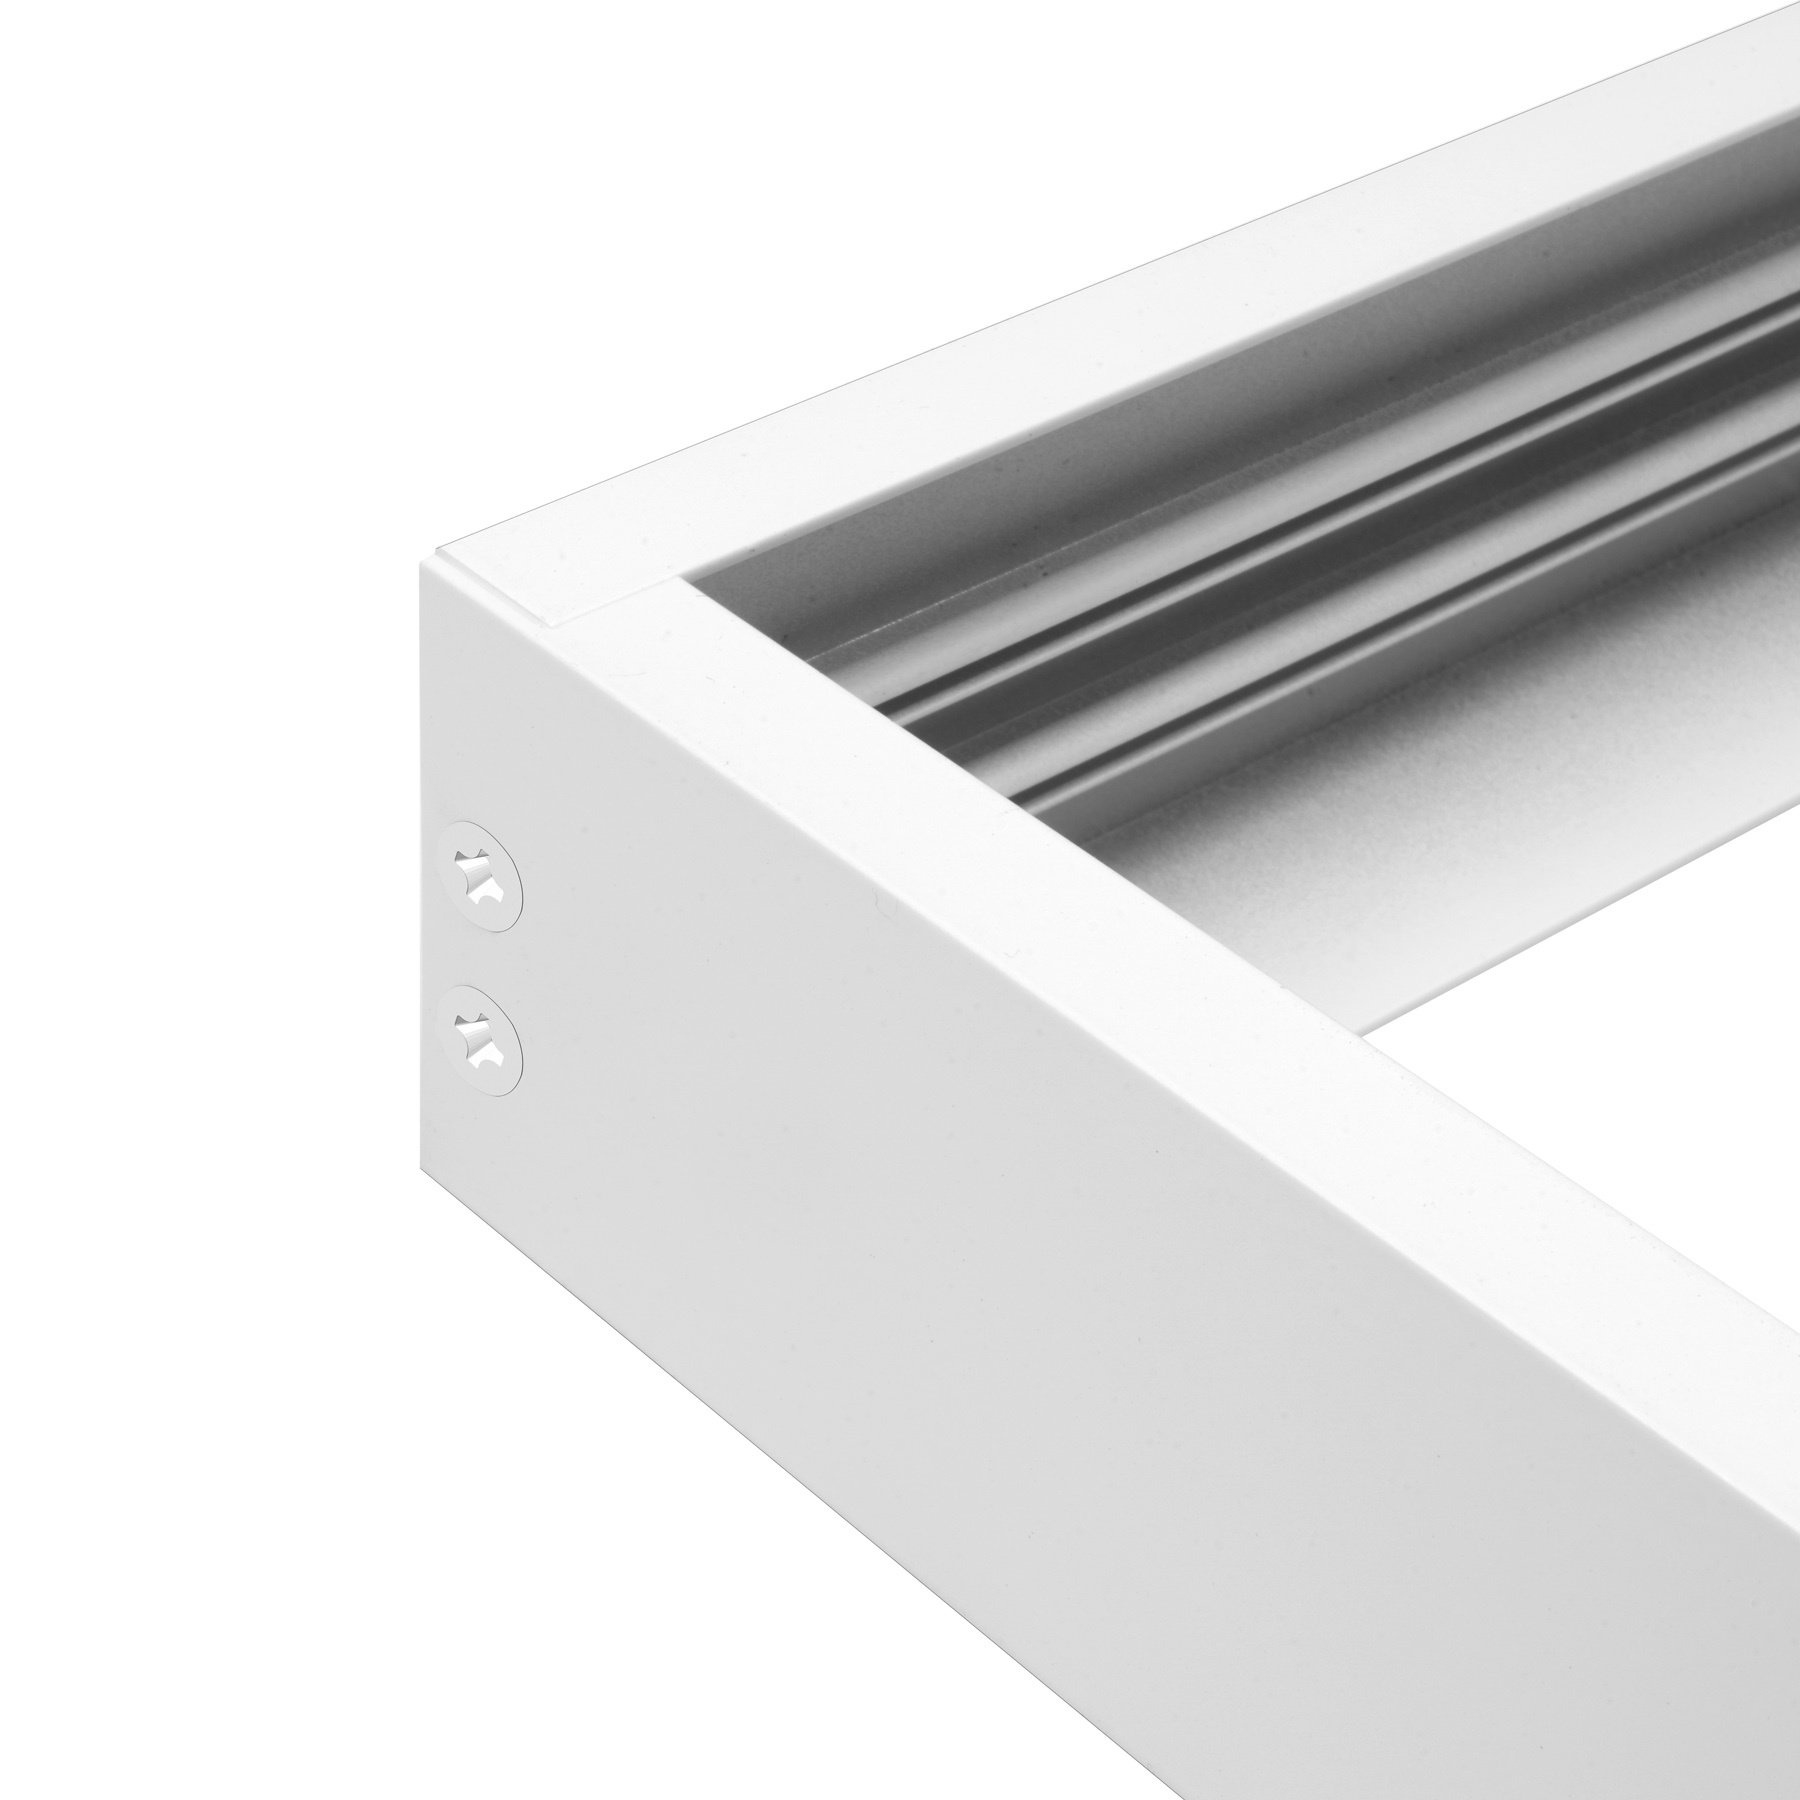 Cadre blanc en aluminium pour dalle LED 60x60 